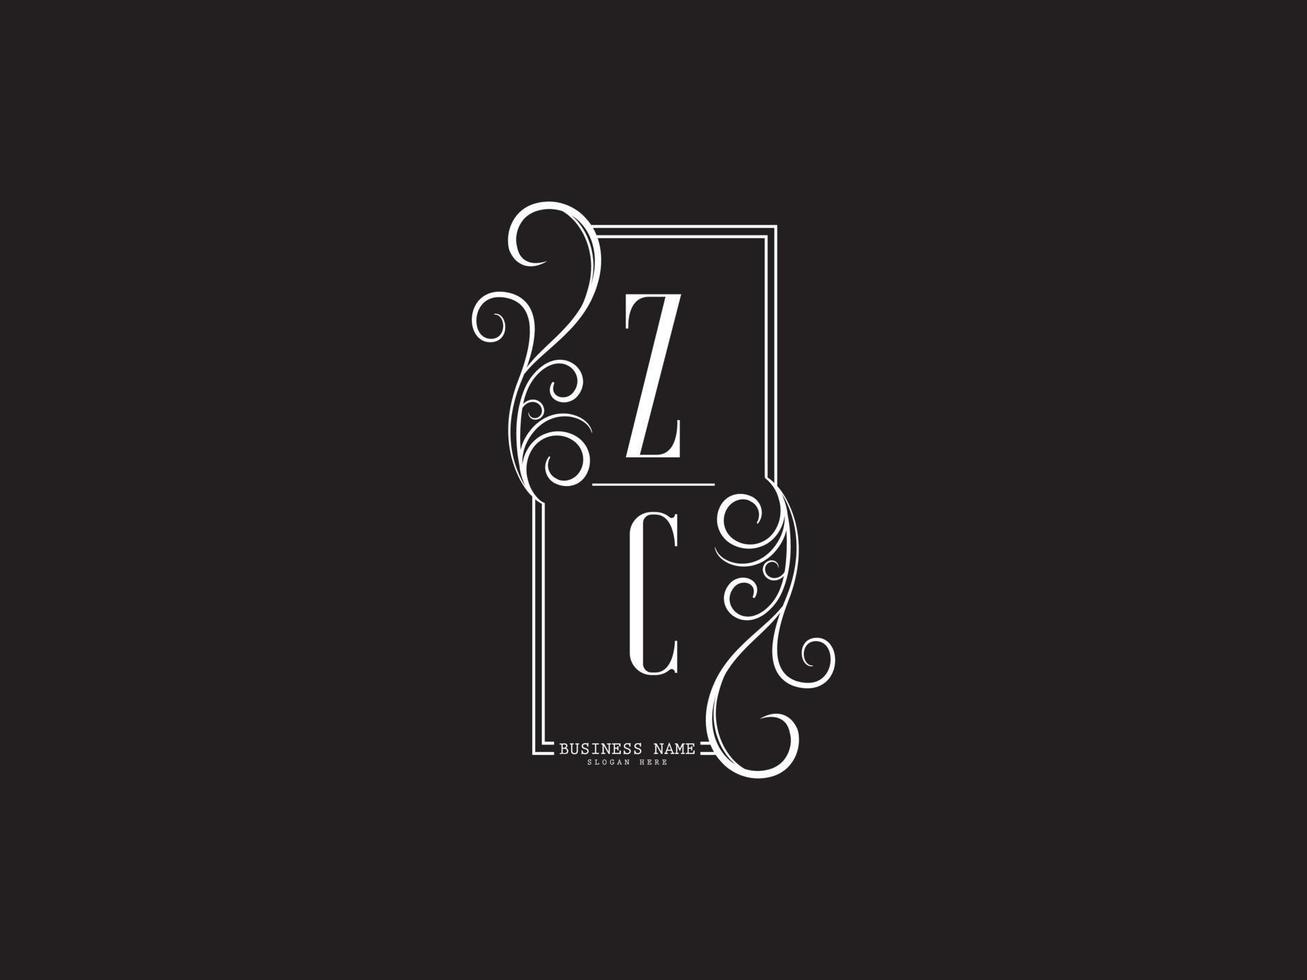 créatif zc cz luxe logo lettre vecteur image design